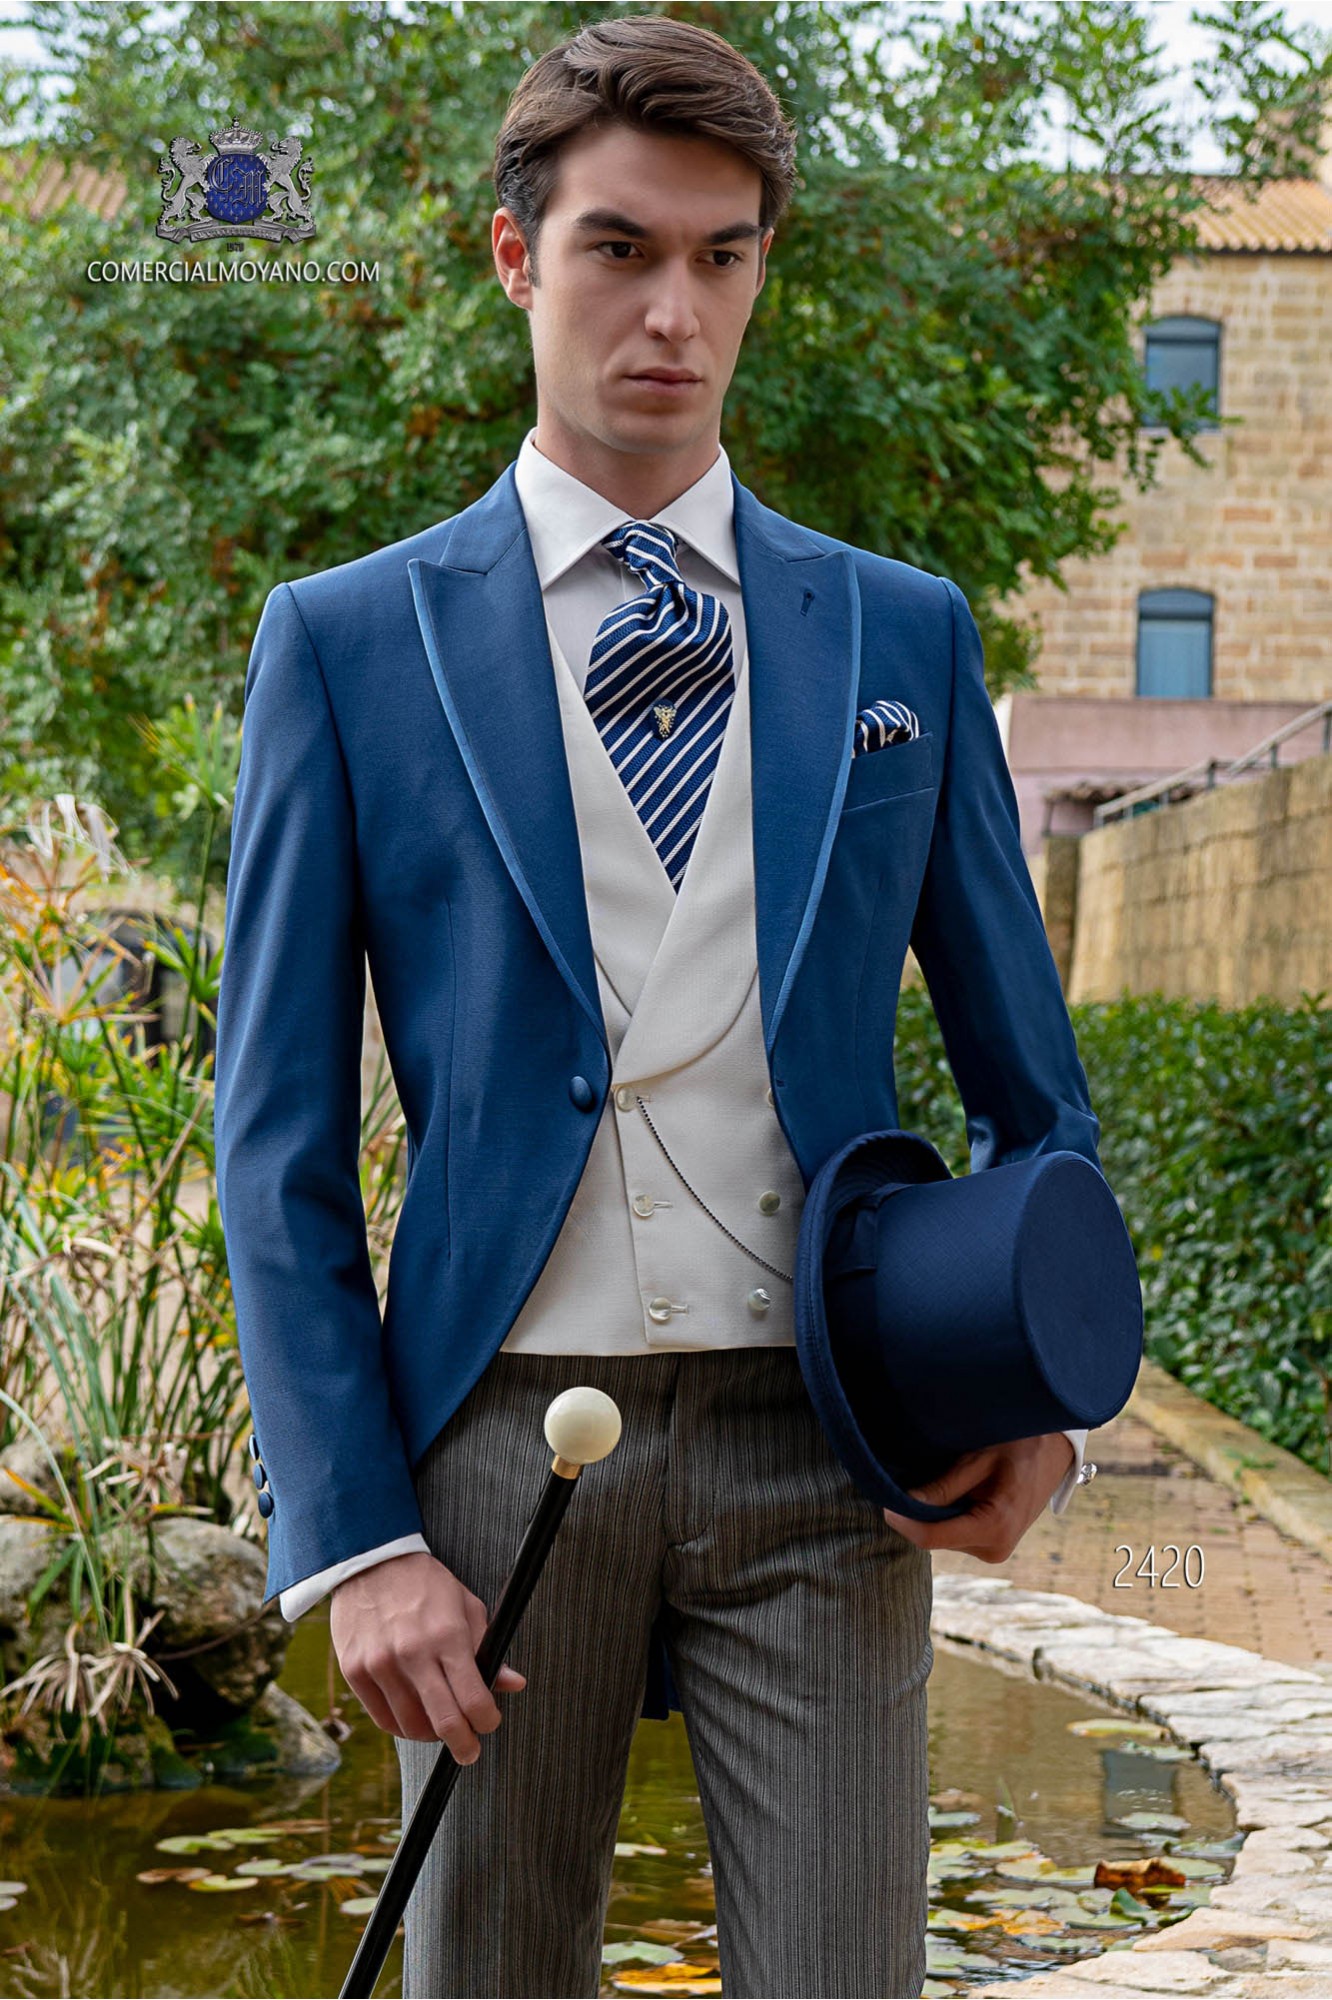 Chaqué de novio azul royal con pantalón raya diplomática modelo: 2420 Mario Moyano colección Gentleman